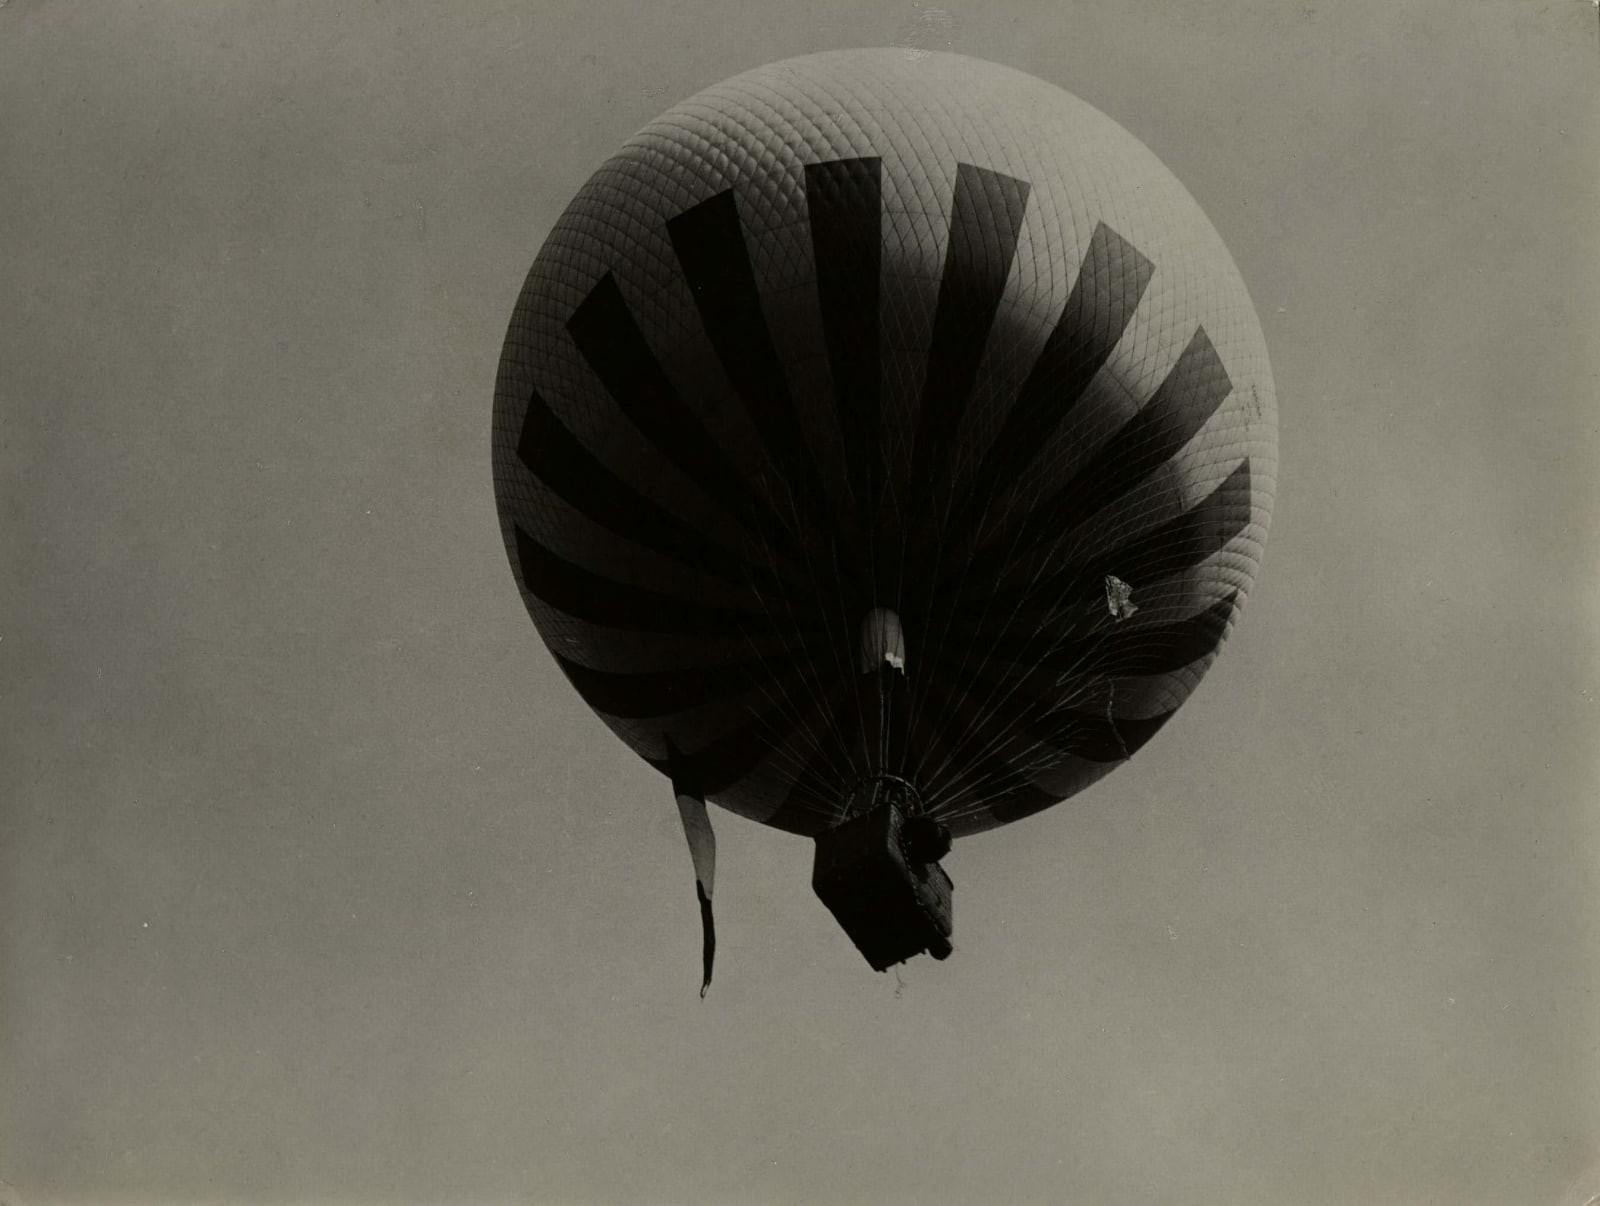 Воздушный шар, летящий над окраинами Парижа, 1929. Фотограф Билл Брандт